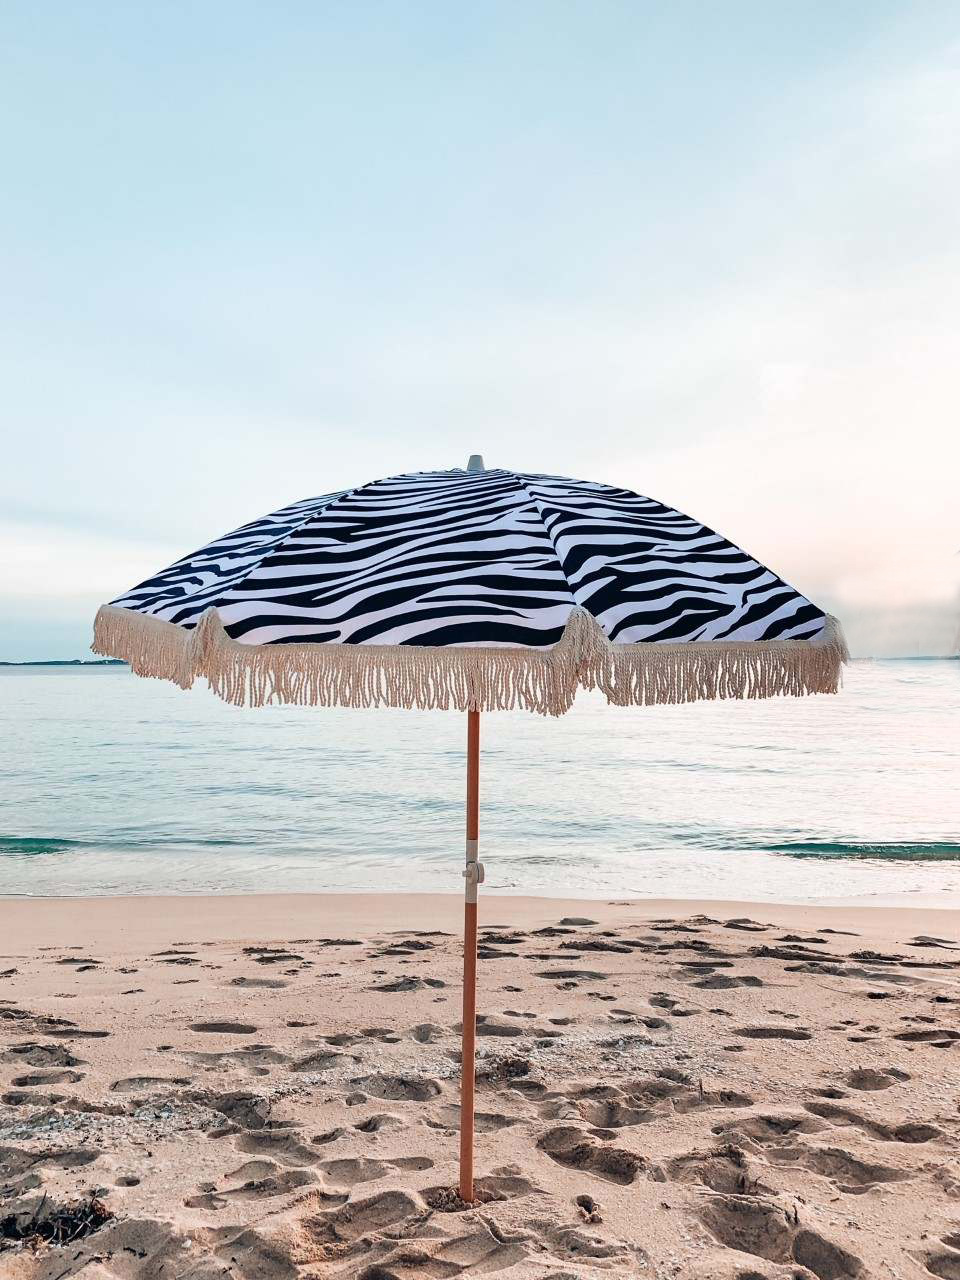 شراء مظلة هامشية بطول 6.5 قدم قابلة للإمالة للشاطئ ومظلات فناء تجارية خارجية ومظلة حديقة ,مظلة هامشية بطول 6.5 قدم قابلة للإمالة للشاطئ ومظلات فناء تجارية خارجية ومظلة حديقة الأسعار ·مظلة هامشية بطول 6.5 قدم قابلة للإمالة للشاطئ ومظلات فناء تجارية خارجية ومظلة حديقة العلامات التجارية ,مظلة هامشية بطول 6.5 قدم قابلة للإمالة للشاطئ ومظلات فناء تجارية خارجية ومظلة حديقة الصانع ,مظلة هامشية بطول 6.5 قدم قابلة للإمالة للشاطئ ومظلات فناء تجارية خارجية ومظلة حديقة اقتباس ·مظلة هامشية بطول 6.5 قدم قابلة للإمالة للشاطئ ومظلات فناء تجارية خارجية ومظلة حديقة الشركة